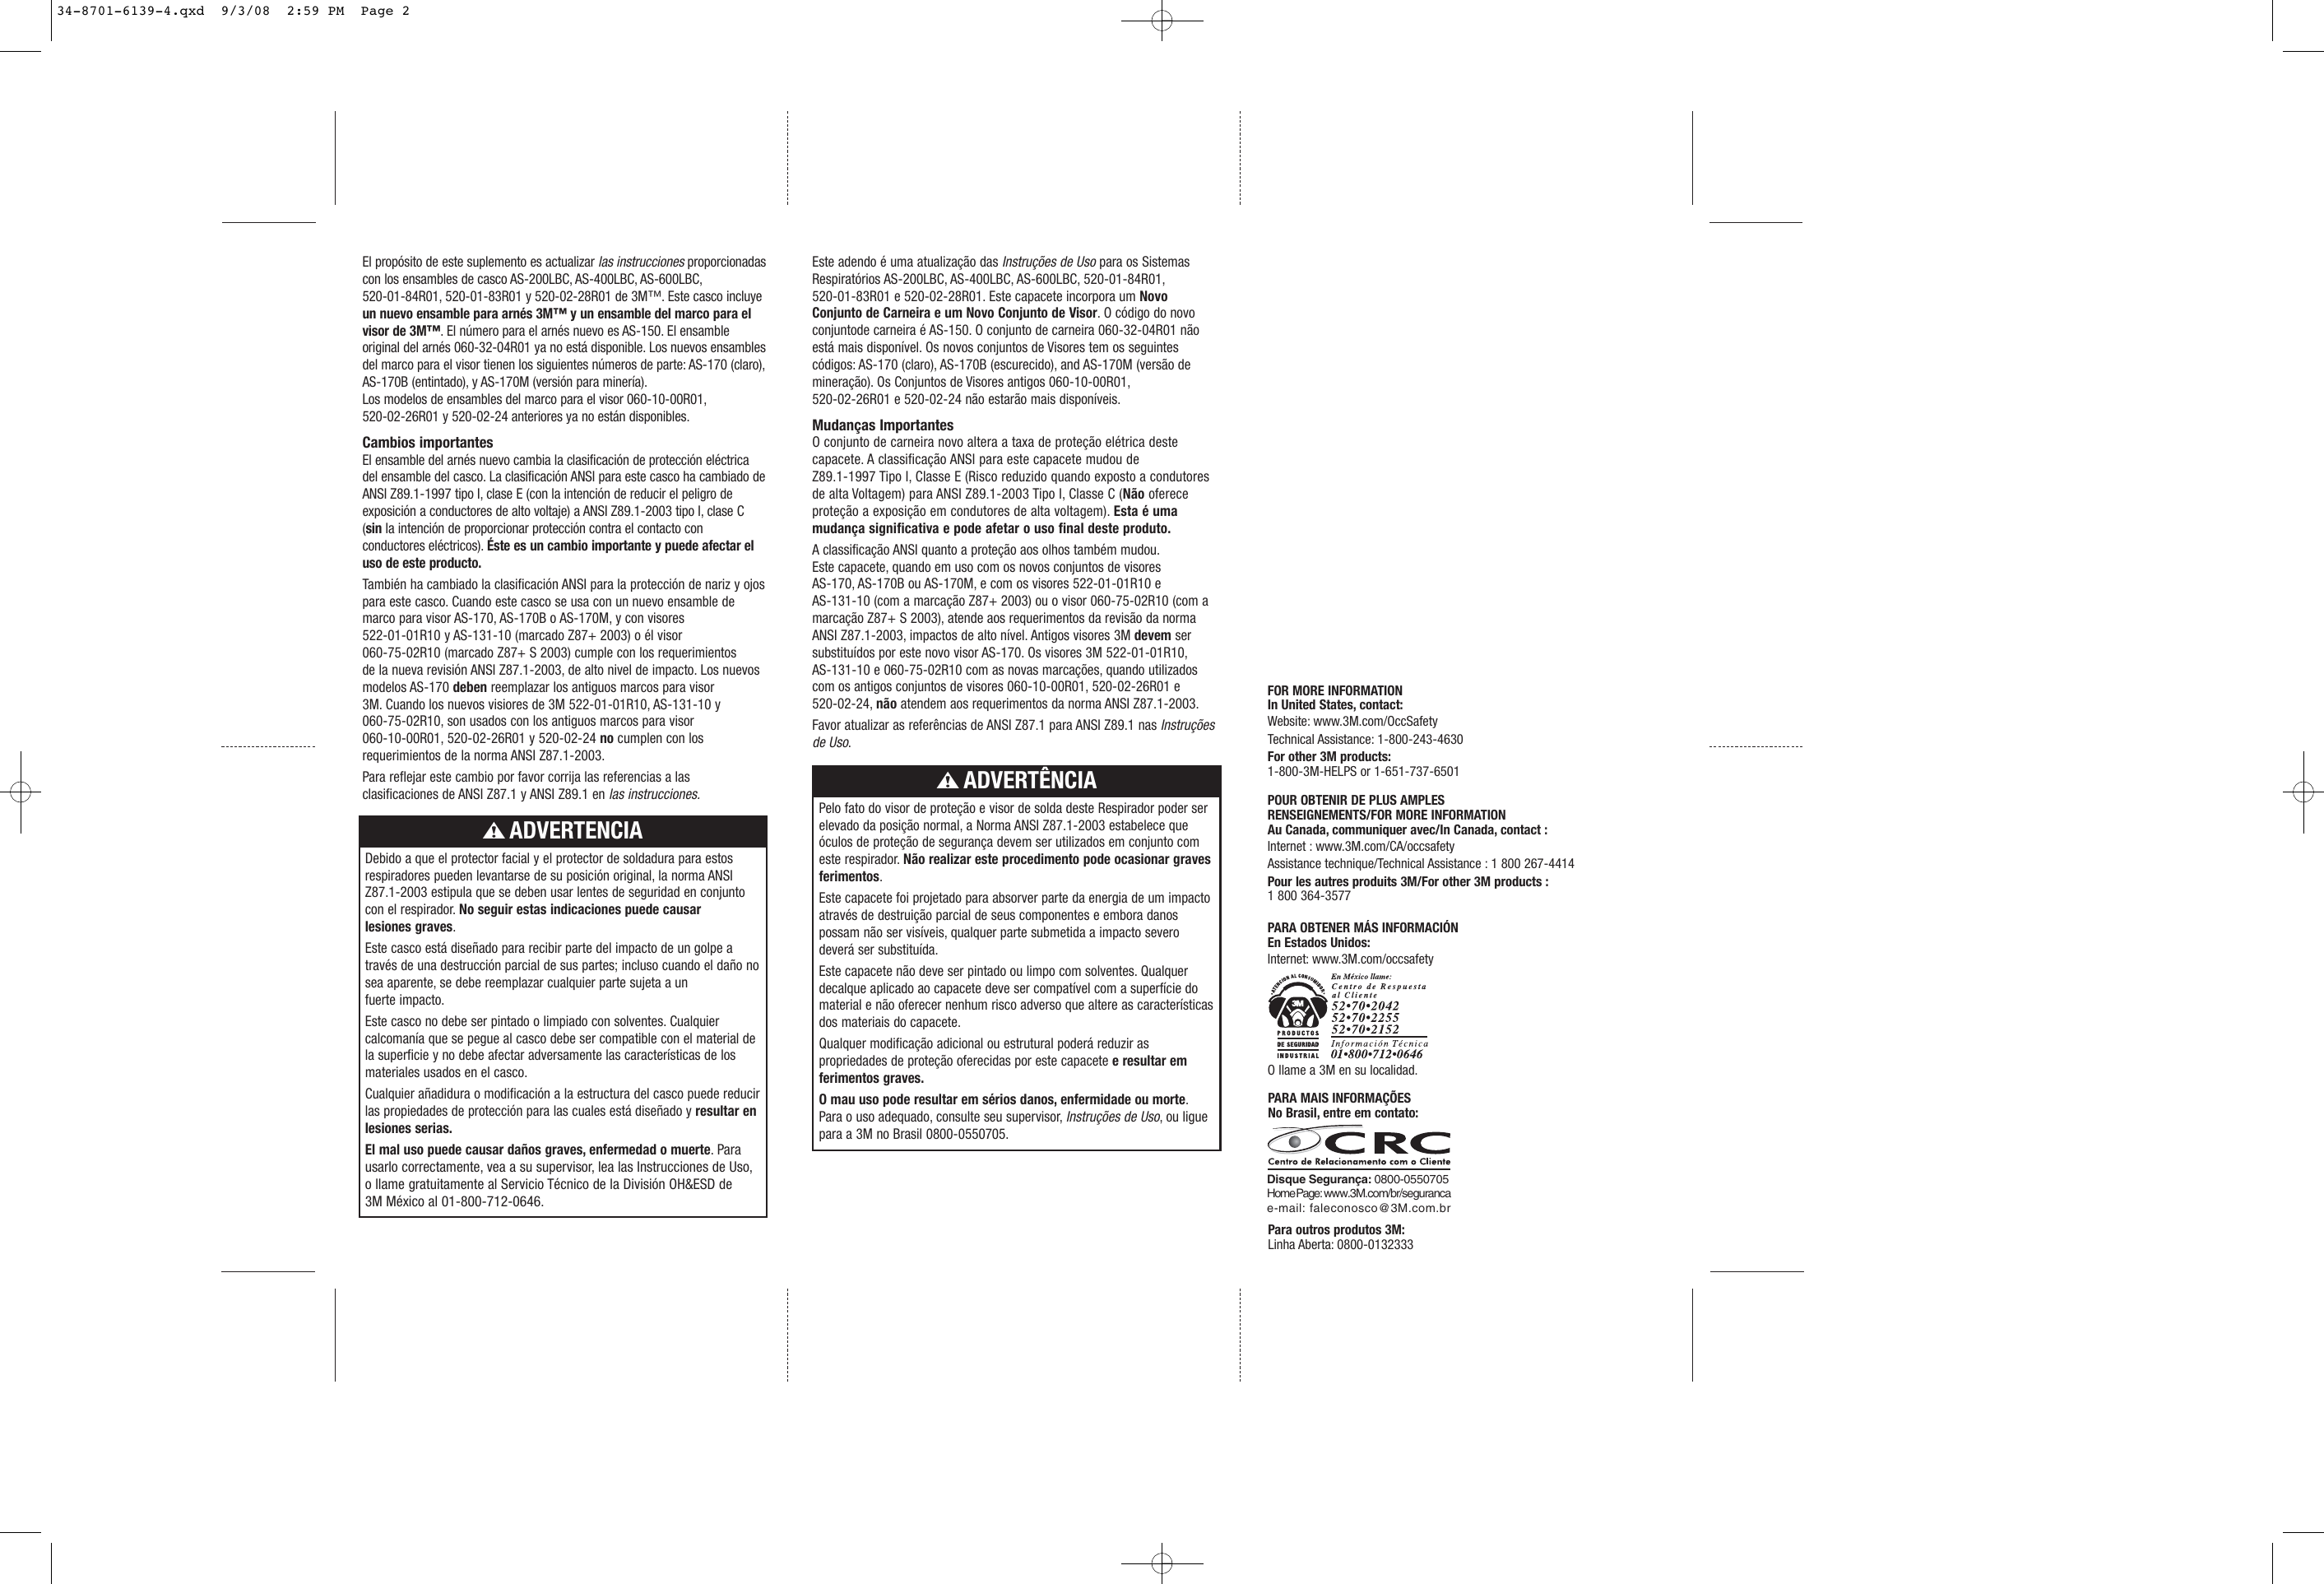 Page 2 of 2 - 3M 520-01-83R01 34-8701-6139-4 User Manual  To The 9f52e1b7-d641-41cd-92a9-eeb2d441ffad